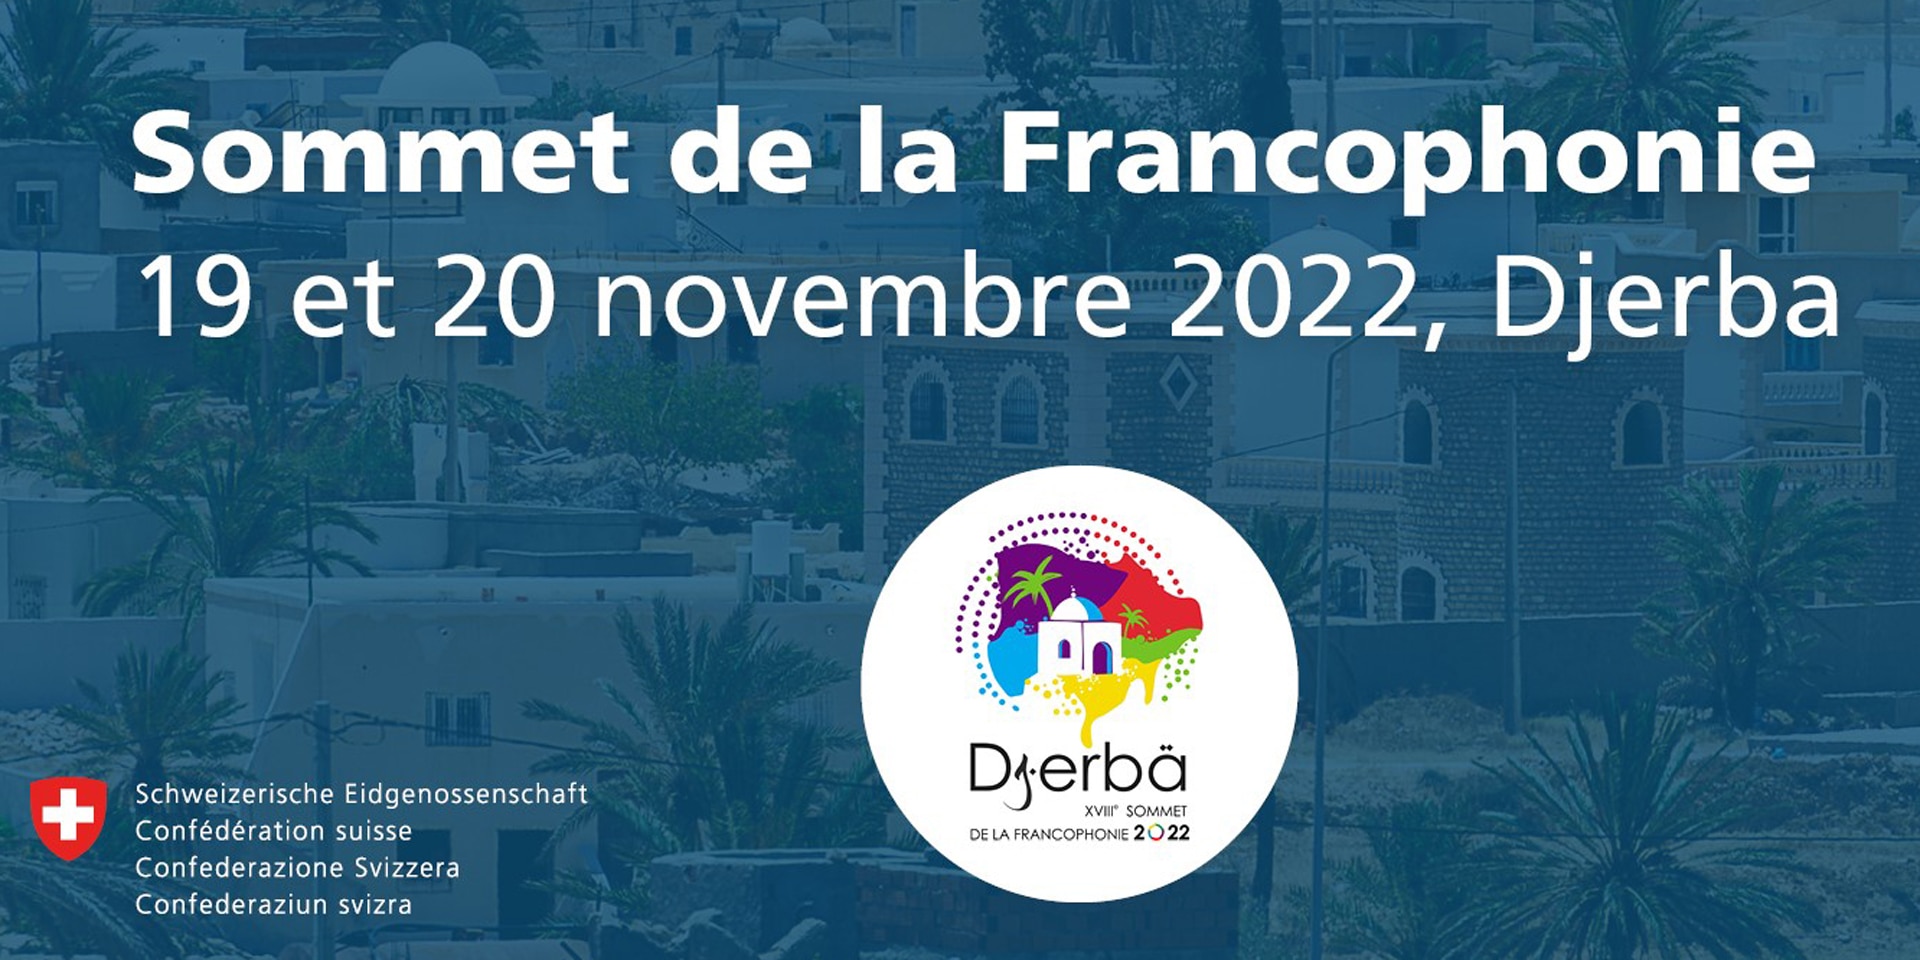 Poster che annuncia il Vertice della Francofonia che si terrà quest'anno a Djerba.